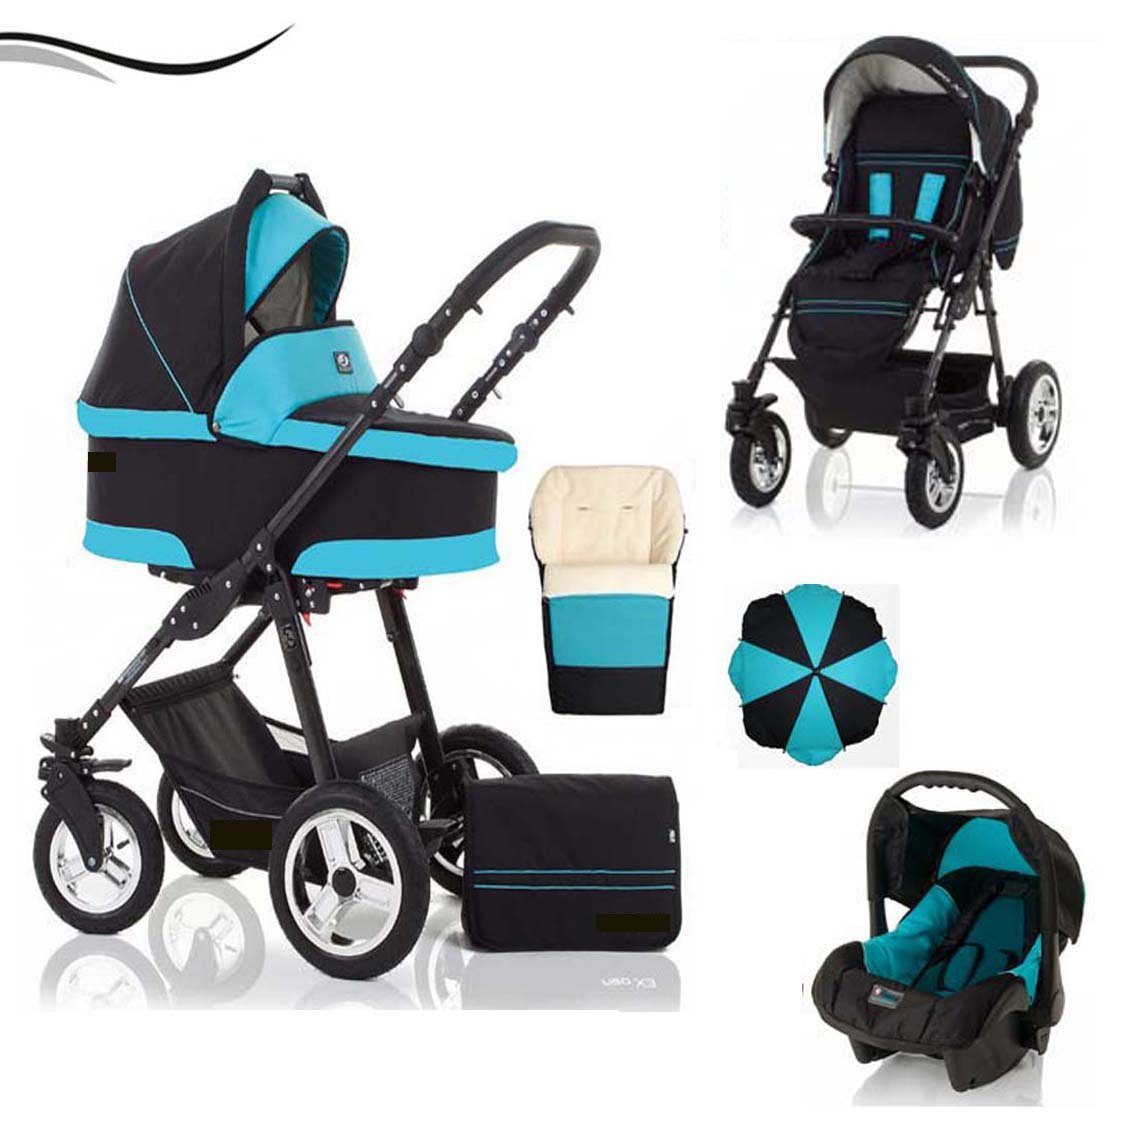 babies-on-wheels Kombi-Kinderwagen City Star 5 in 1 inkl. Autositz, Sonnenschirm und Fußsack - 18 Teile - von Geburt bis 4 Jahre in 16 Farben Schwarz-Türkis